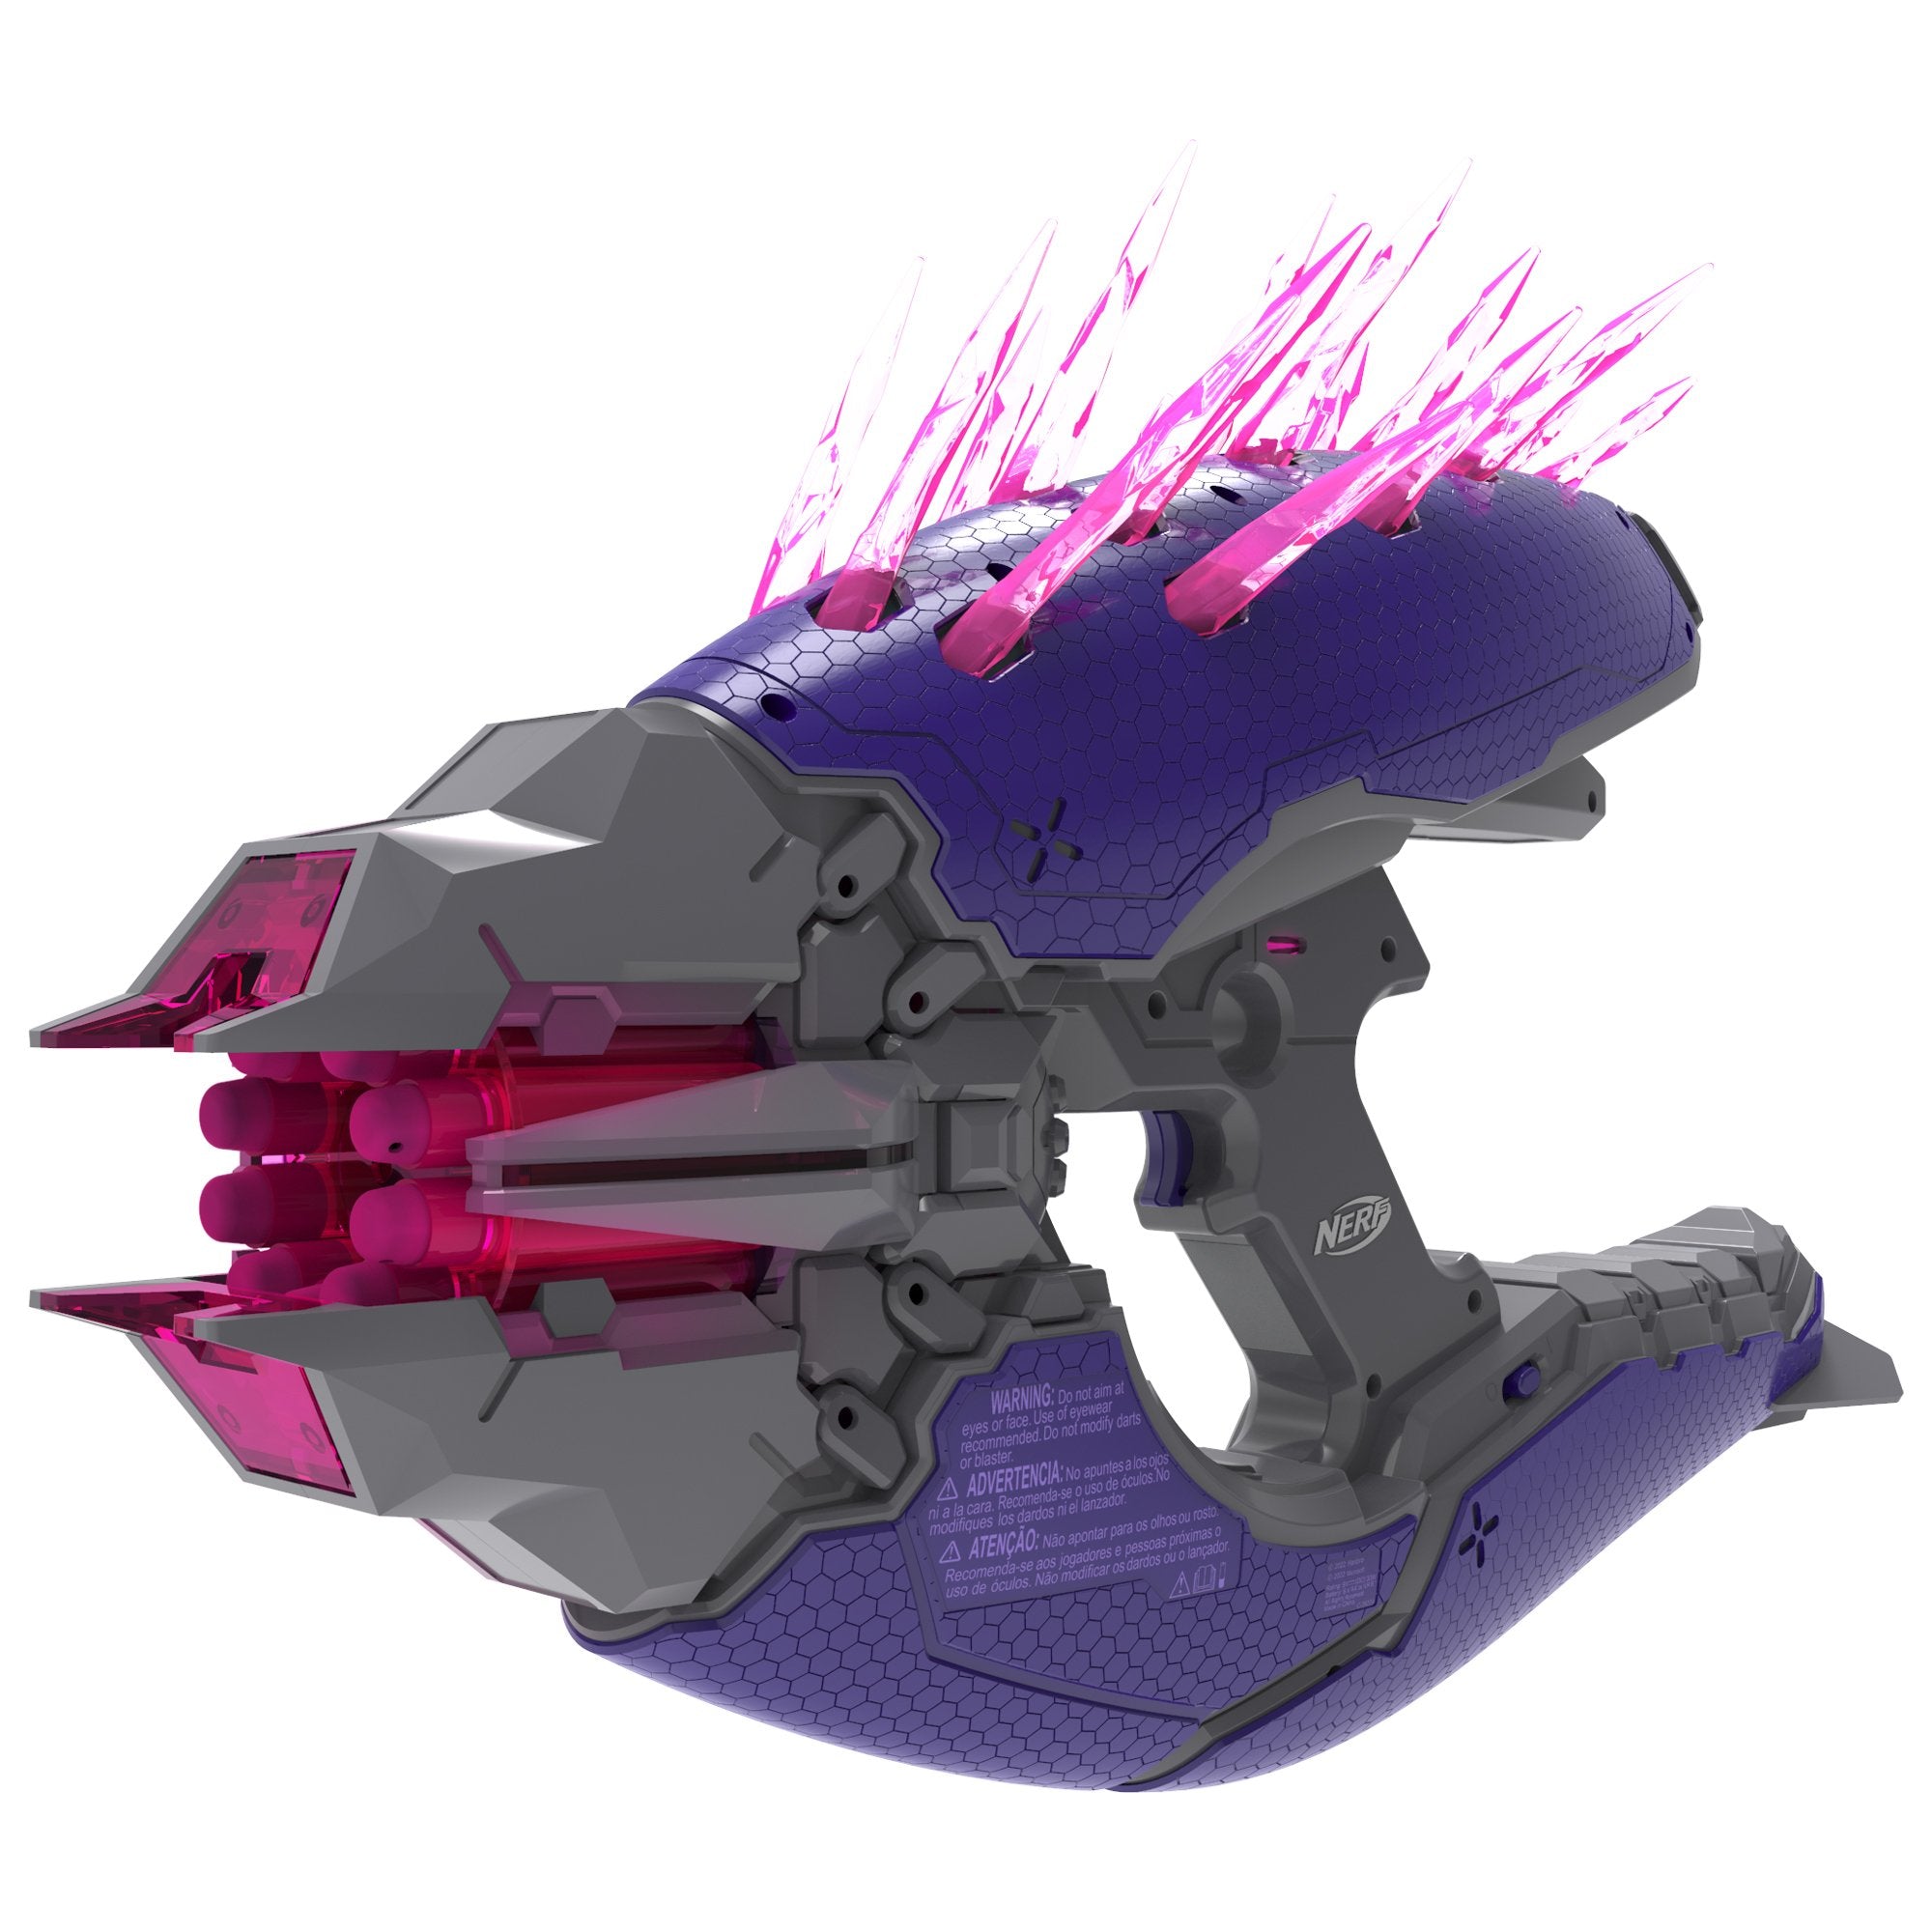 Hasbro Nerf Lmtd Halo Needler Blasternerf